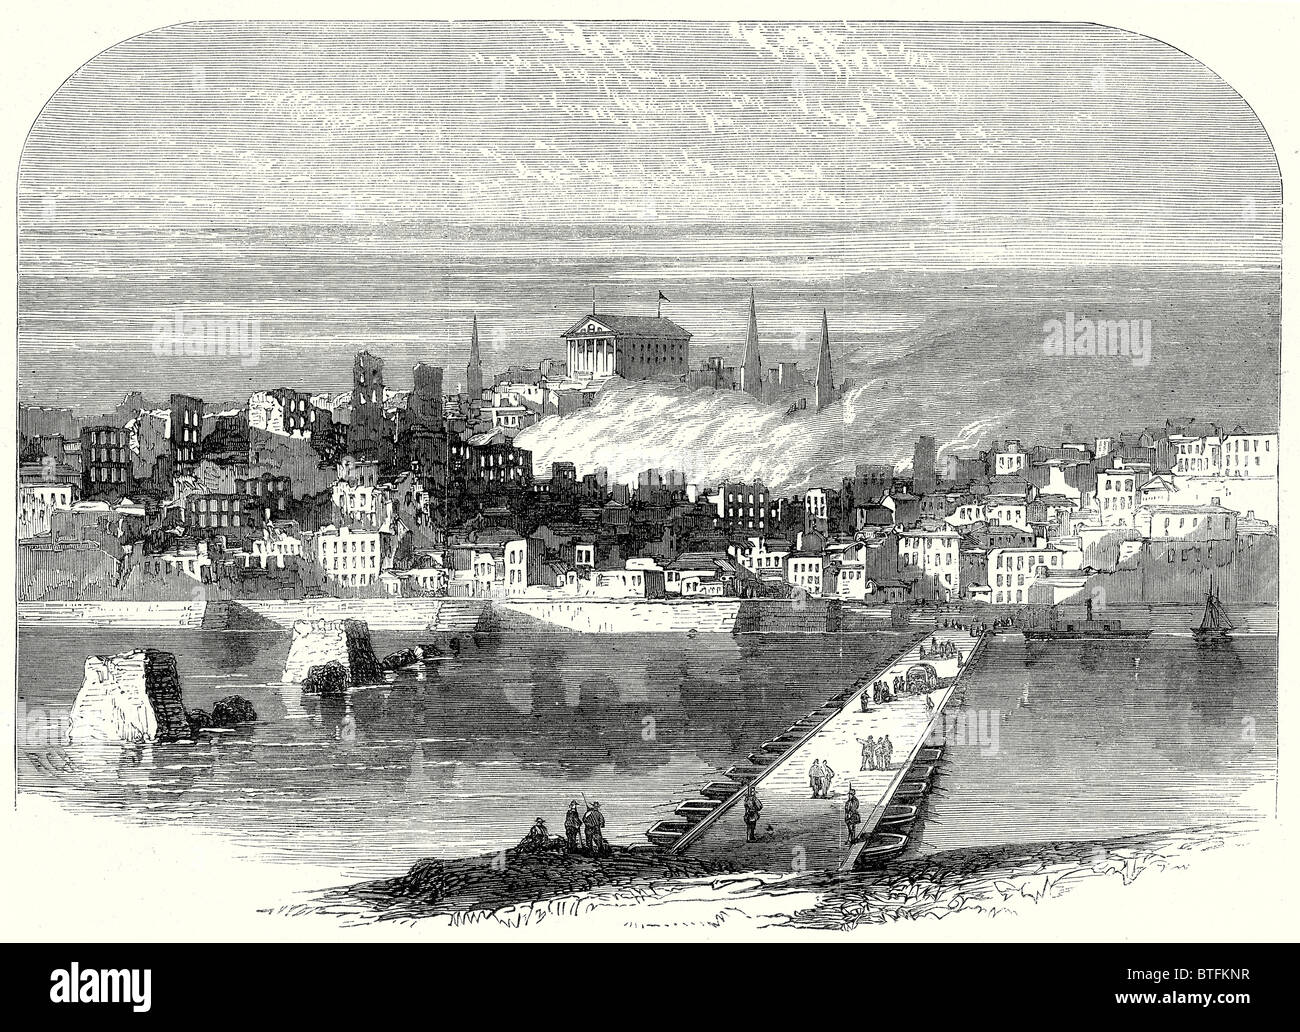 Der Bürgerkrieg In Amerika: Richmond, Virginia, nach der Eroberung der Stadt Richmond aus dem James River, 20. Mai 1865 Stockfoto